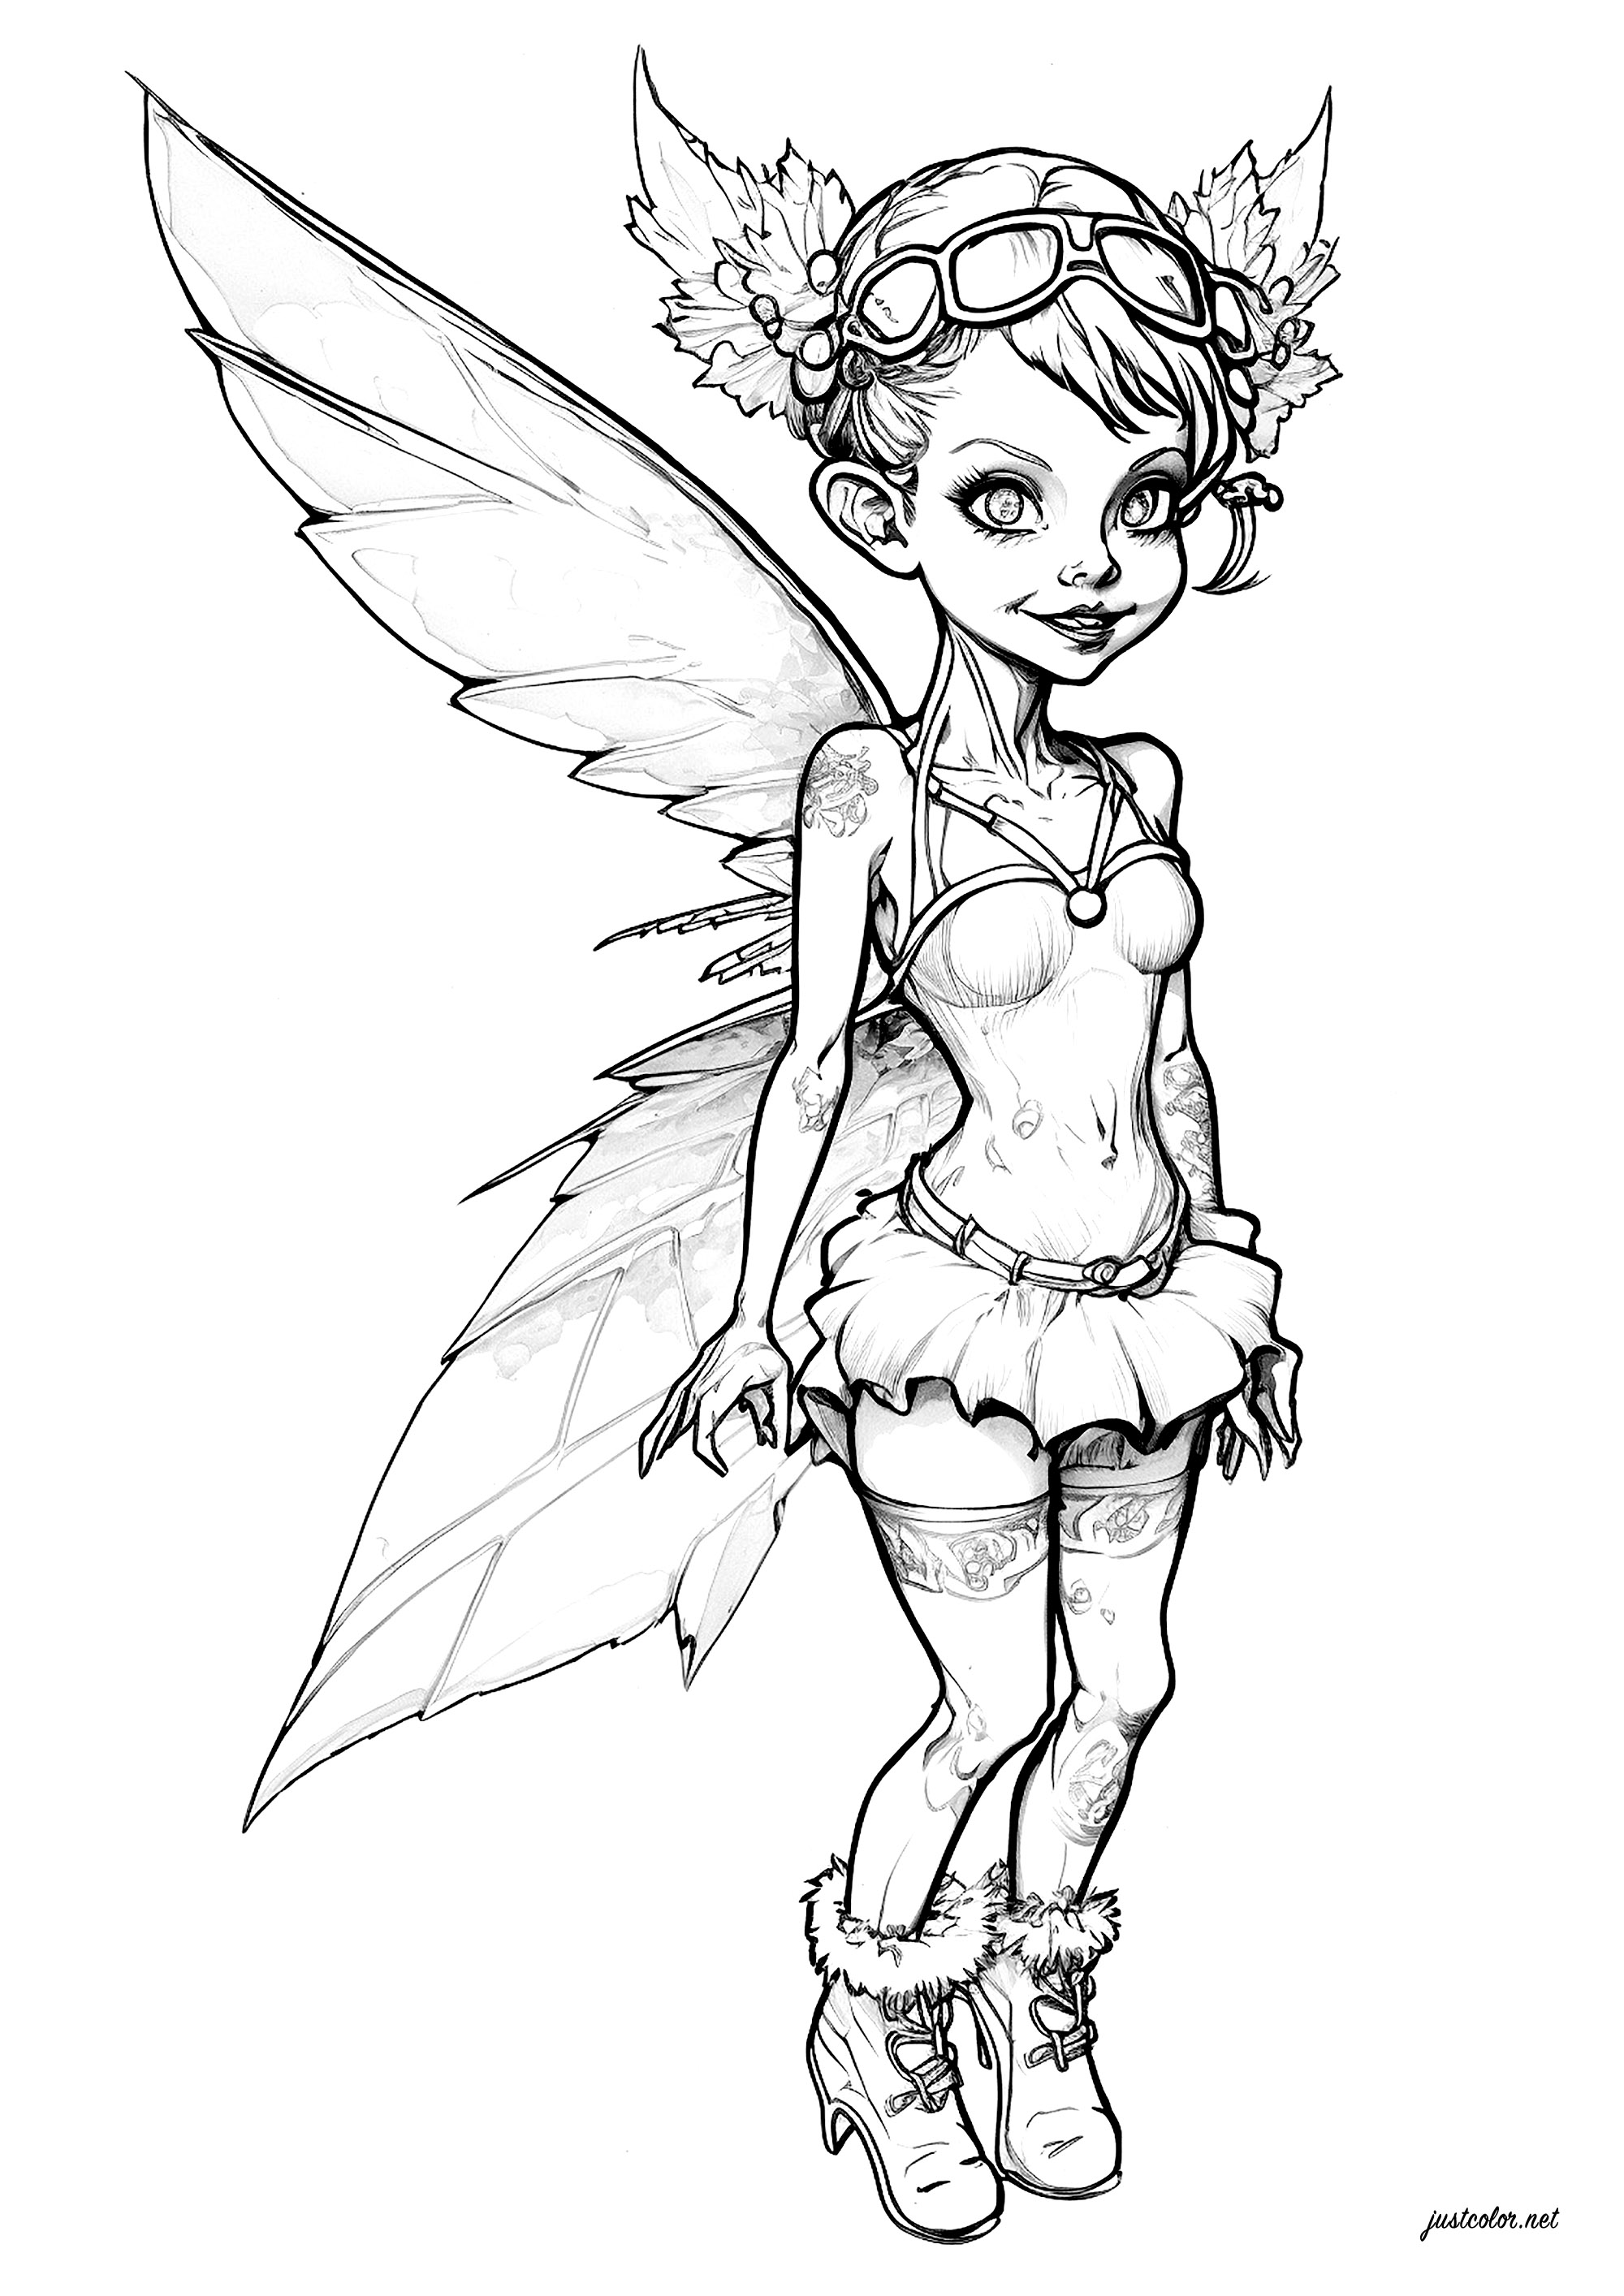 Fée de la forêt. Une belle petite fée avec sa jolie tenue et ses belles ailes déployées, Artiste : IAsabelle